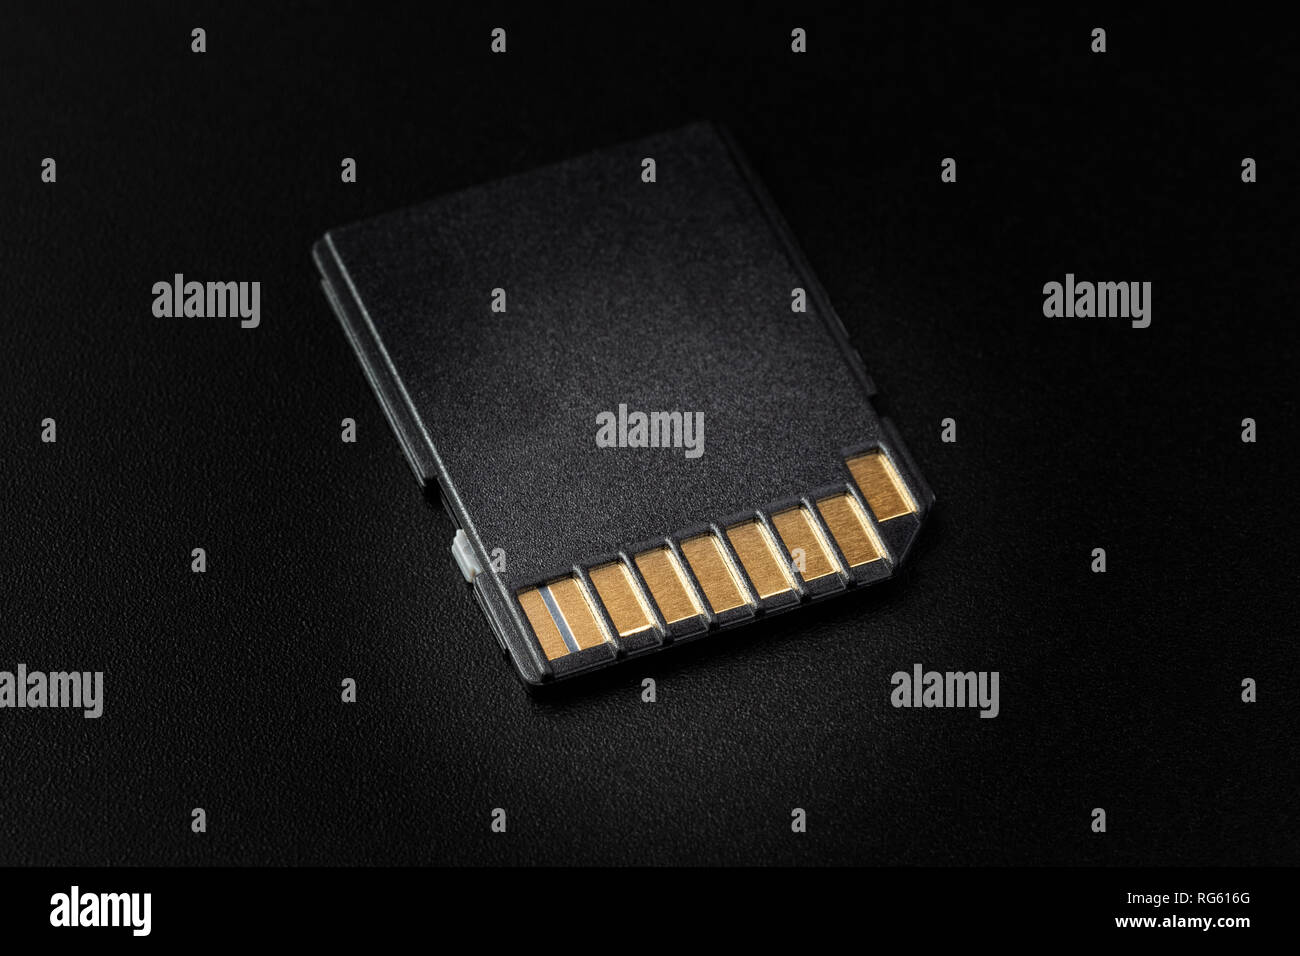 SD-Karte closeup auf schwarzem Hintergrund, mit selektiven Beleuchtung Stockfoto